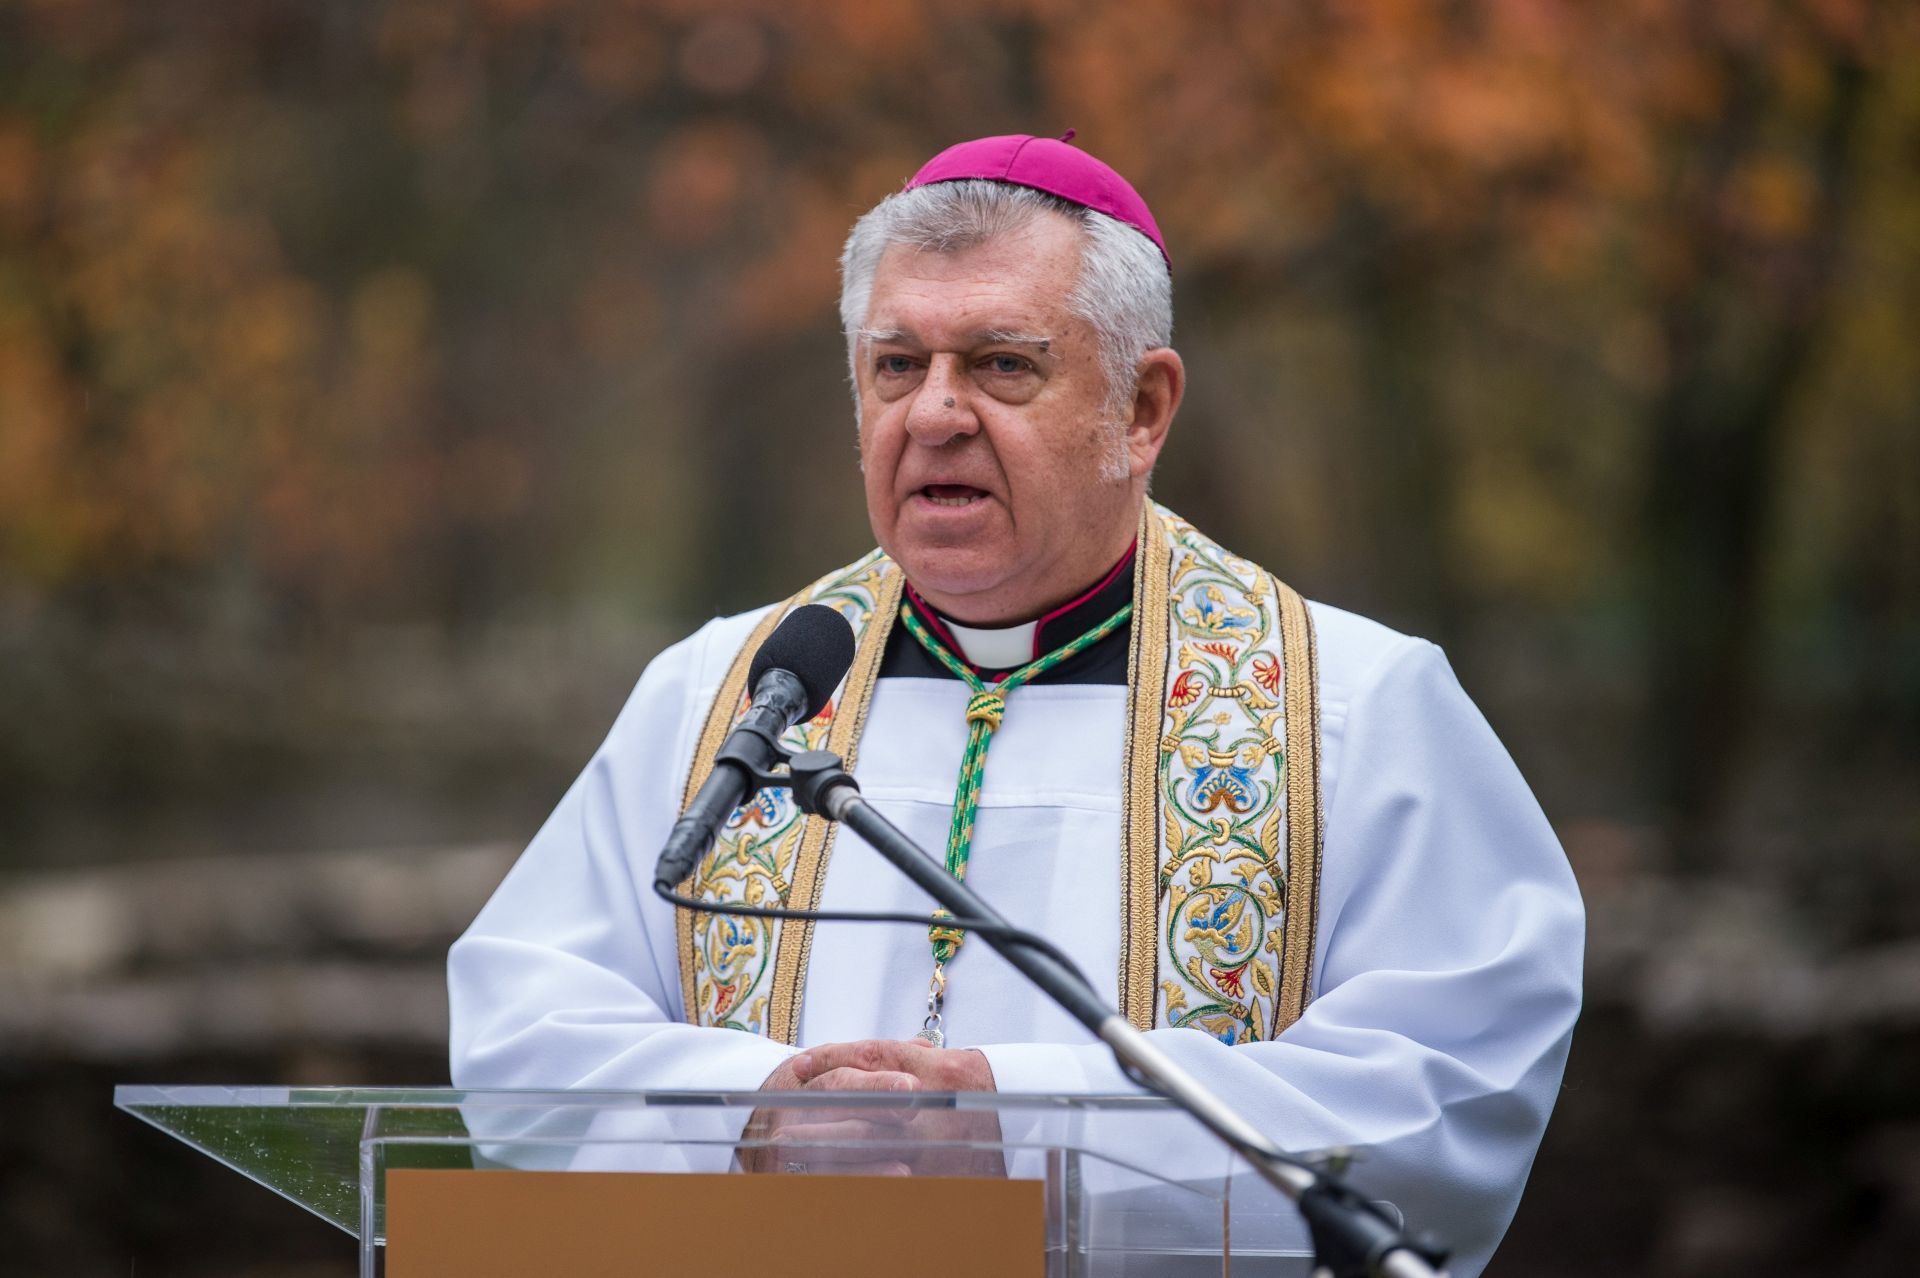 Koronavírusban elhunyt Snell György püspök, a Szent István-bazilika plébánosa